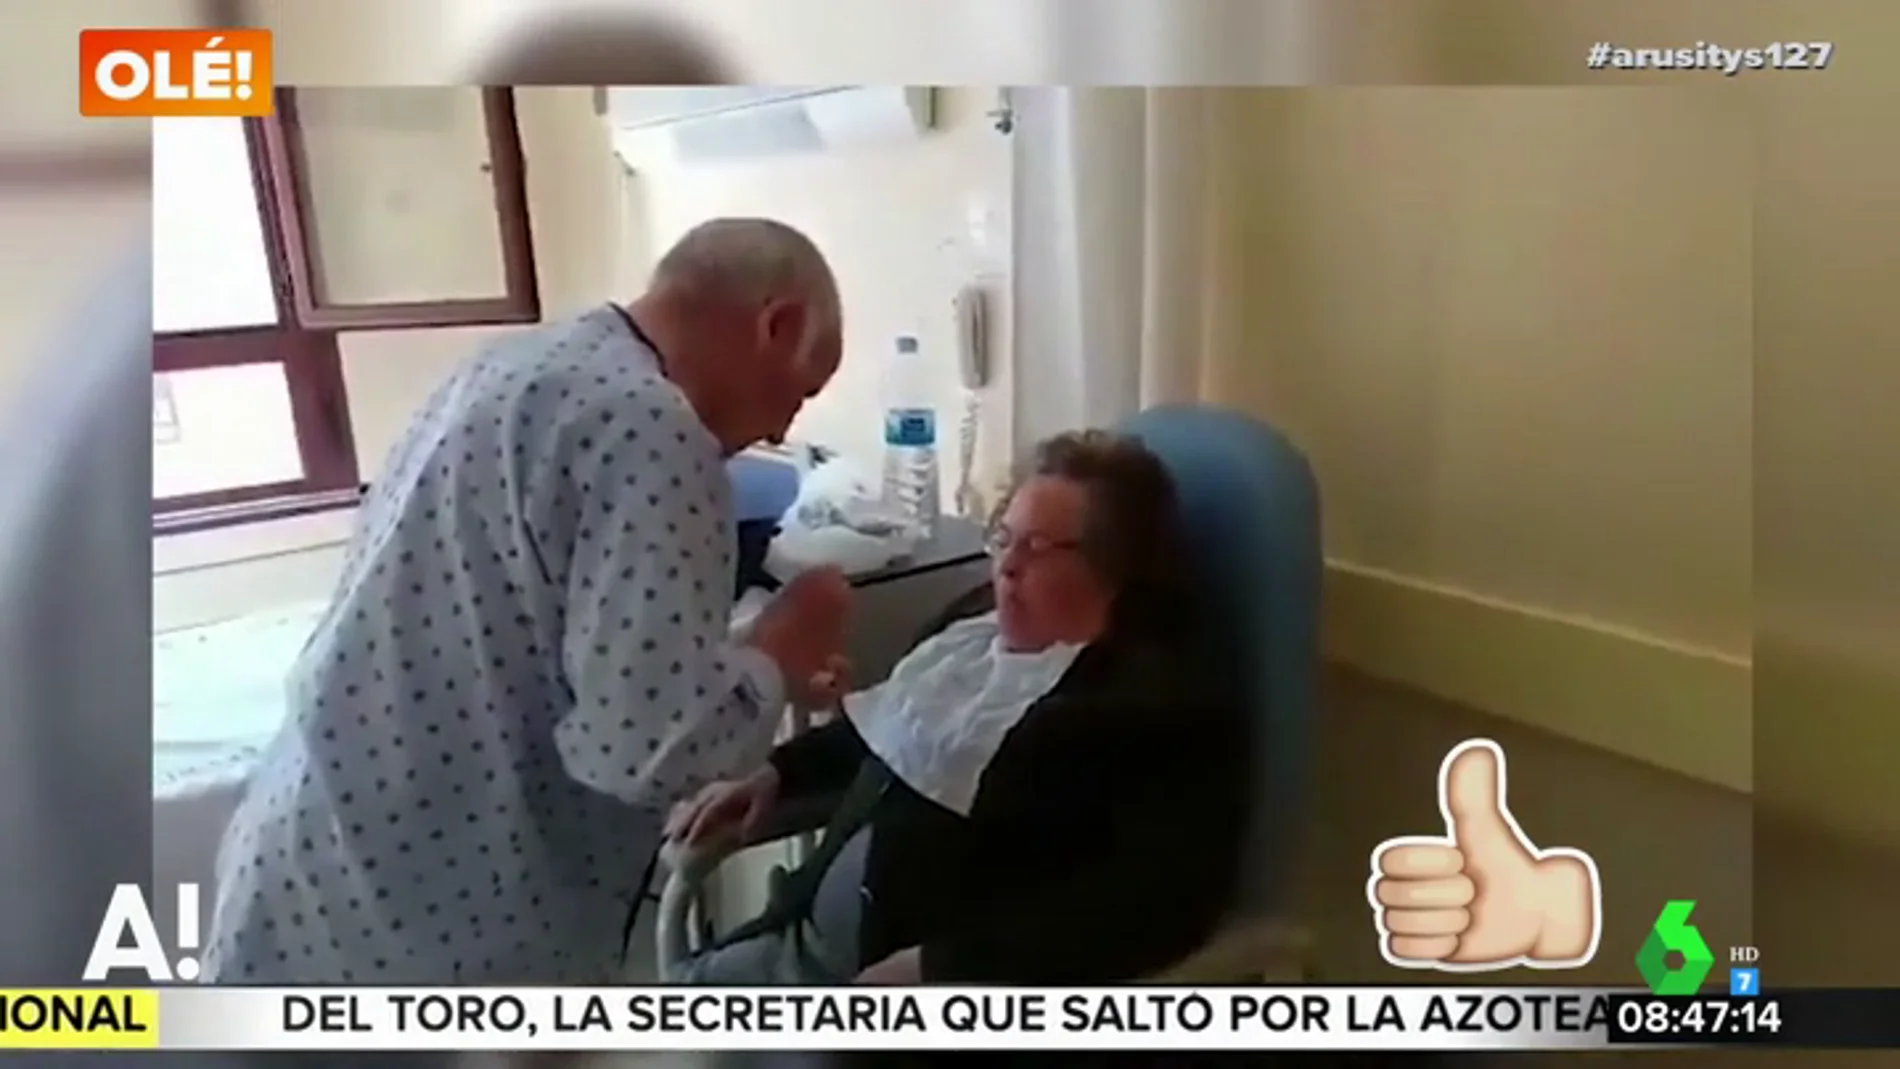 El emocionante vídeo de un anciano, ingresado en el hospital, dando de comer a su mujer